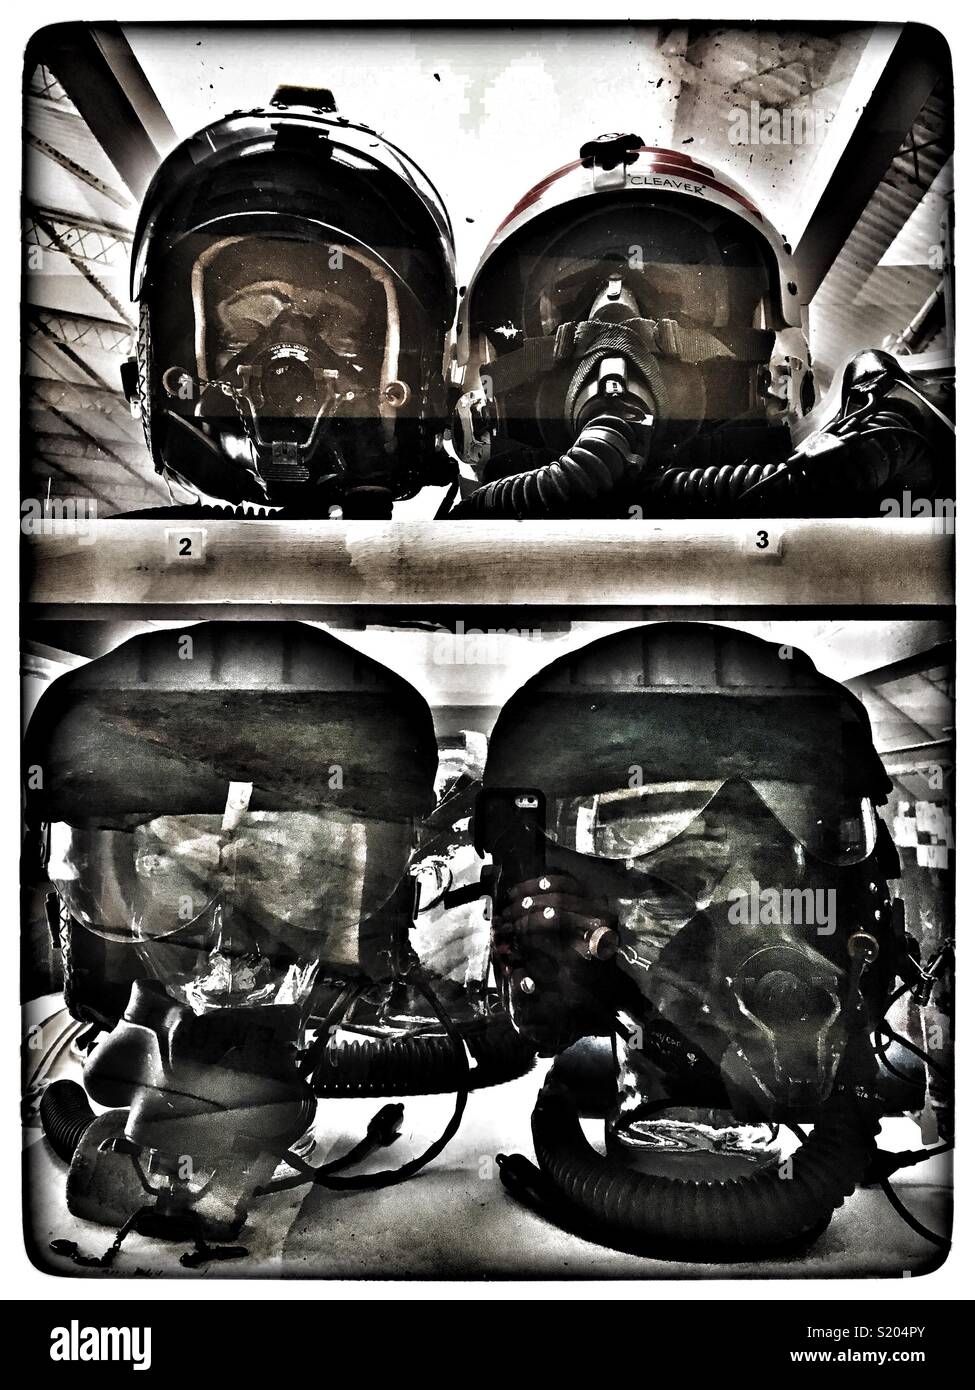 L'OS "Dome" casques de vol des pilotes de chasse de l'époque de la guerre froide, Norfolk et Suffolk aviation museum, Flixton, Suffolk, Angleterre. Banque D'Images